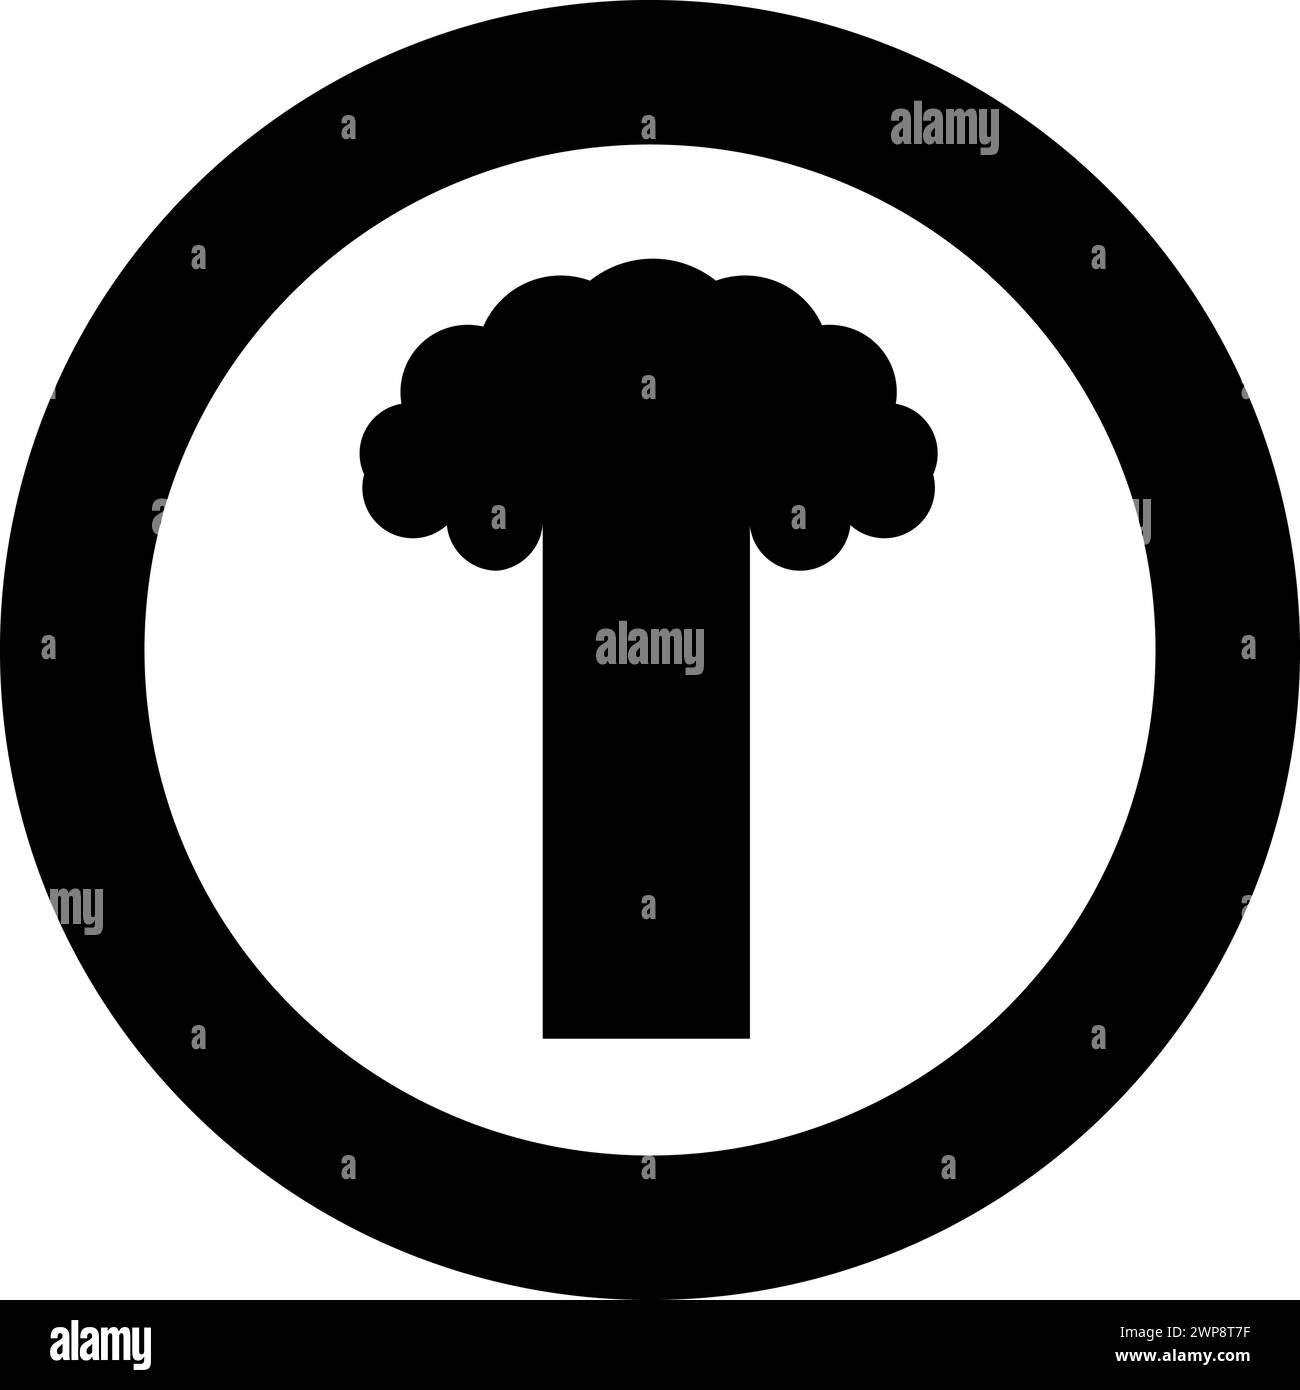 Esplosione nucleare fungo esplosivo distruzione esplosiva icona in cerchio di colore nero vettoriale immagine contorno solido stile semplice Illustrazione Vettoriale